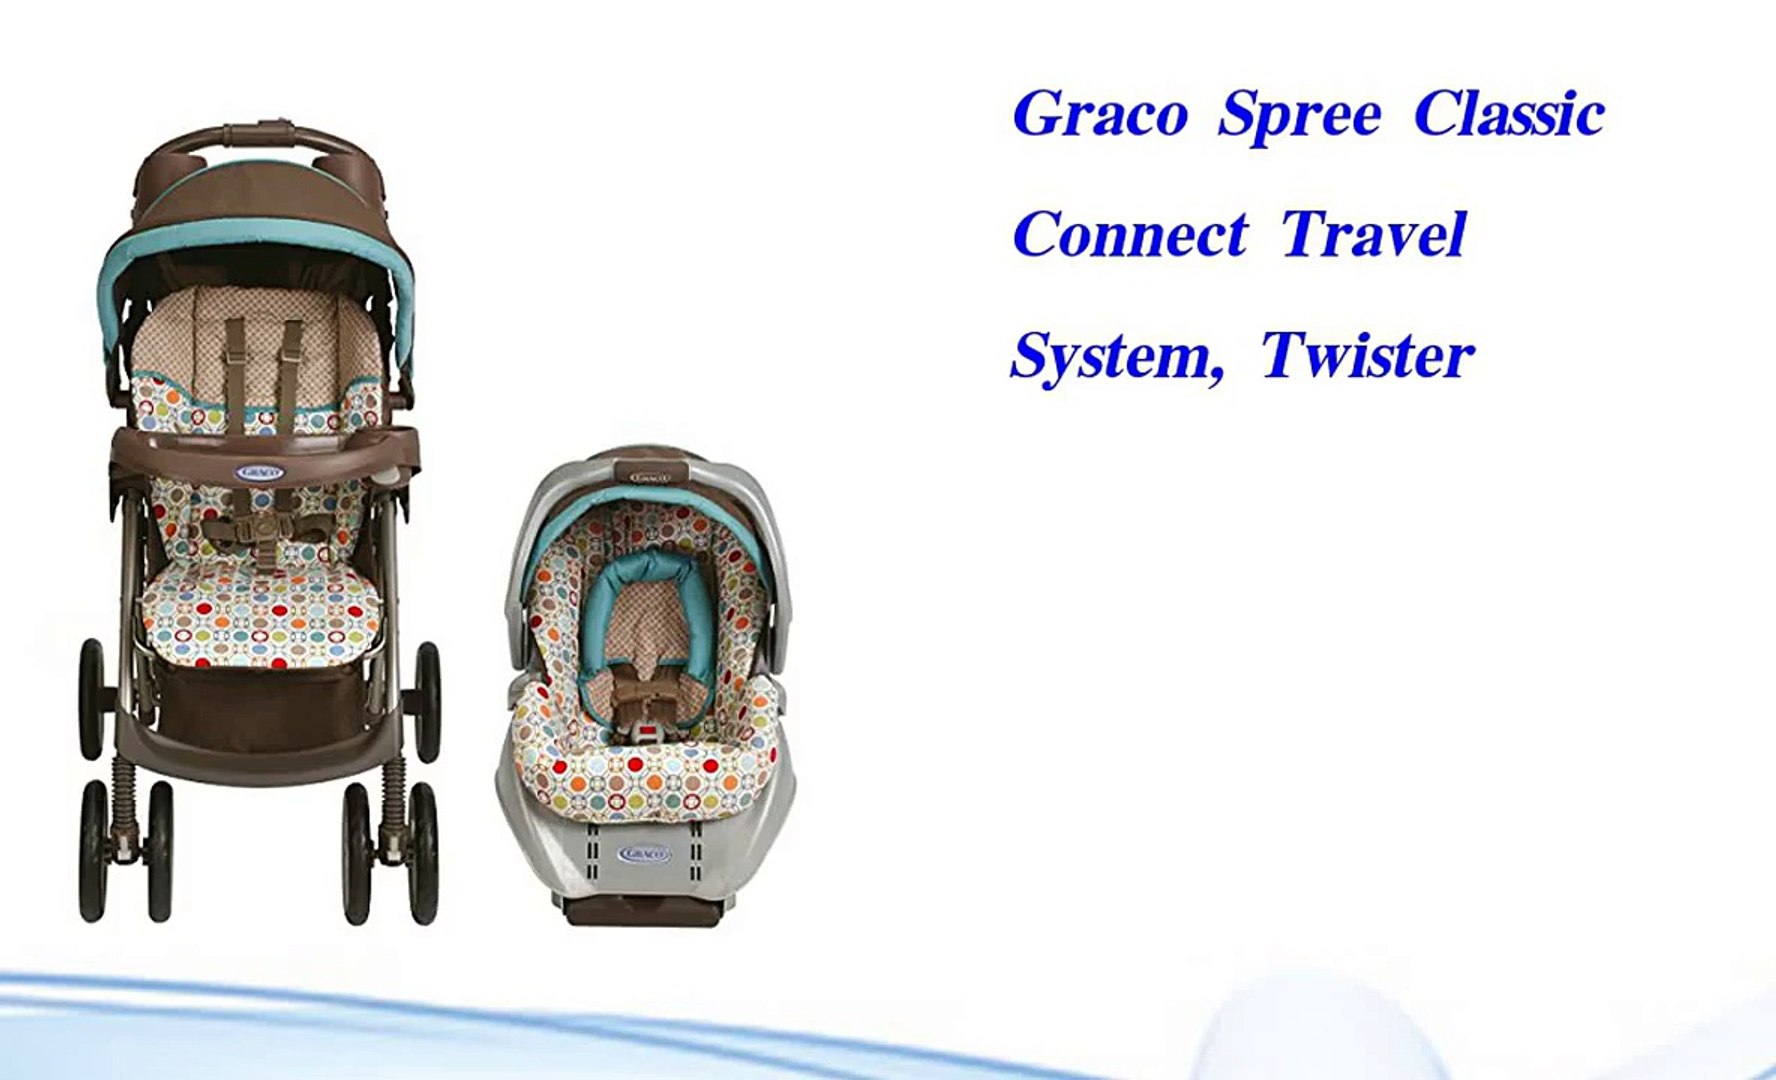 graco spree travel system